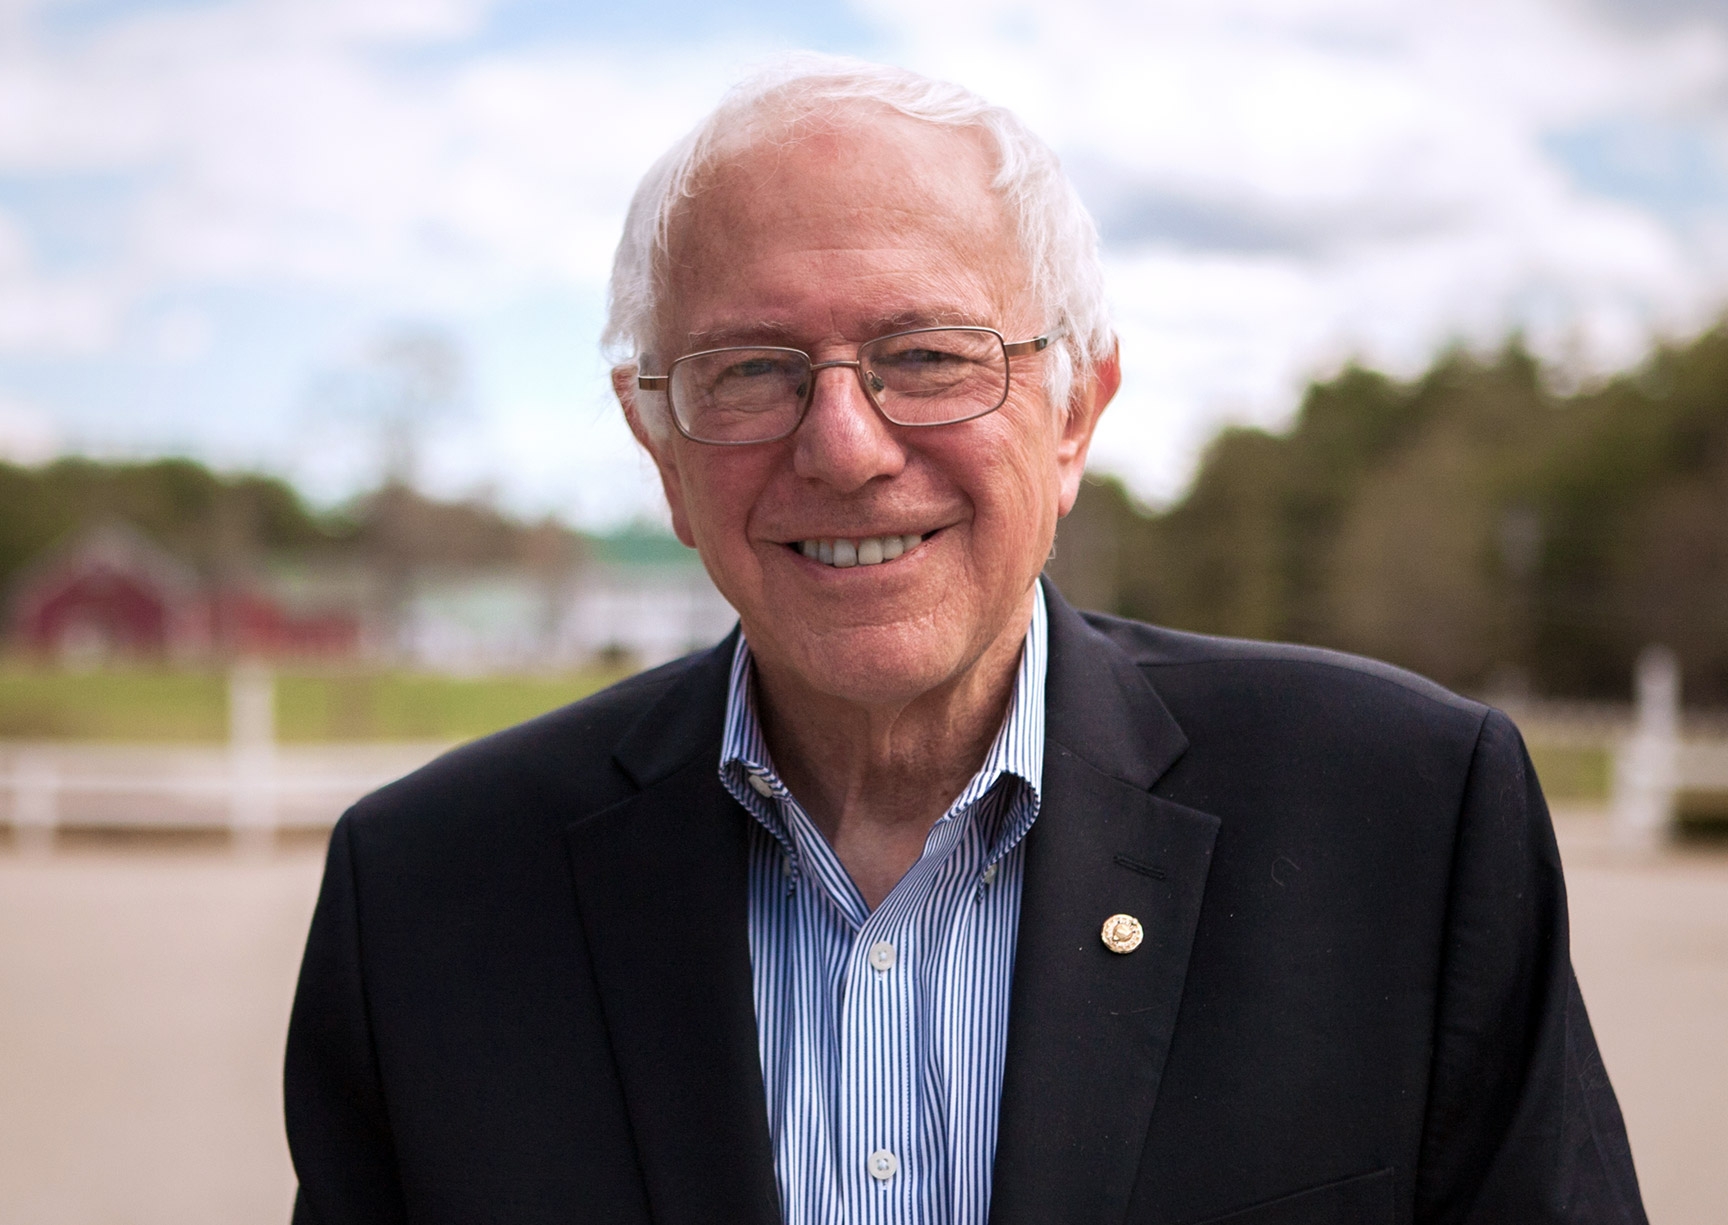 HUB ORIGINAL: My Chat With Sen. Bernie Sanders